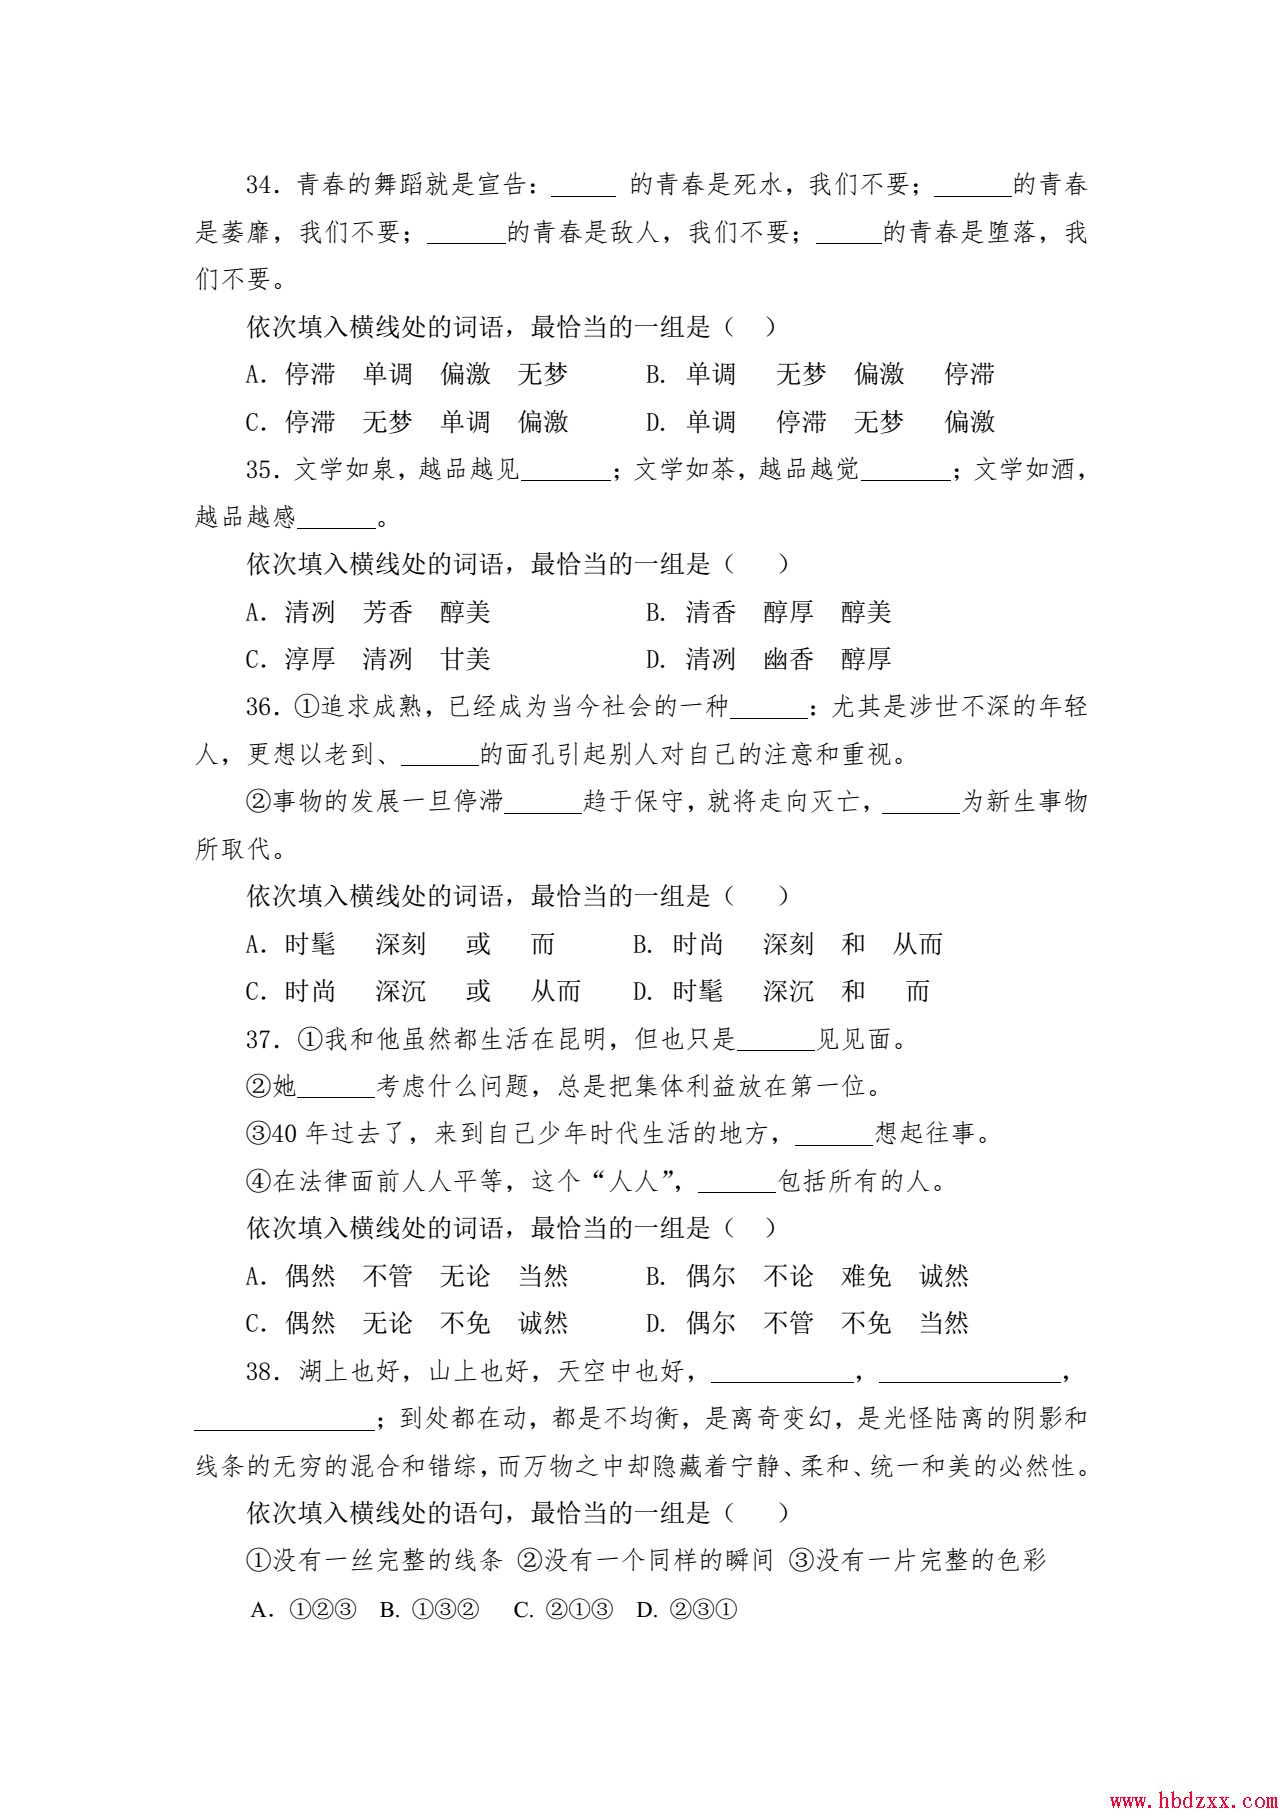 河北App职业技术学院2013年语文单招试题 图1